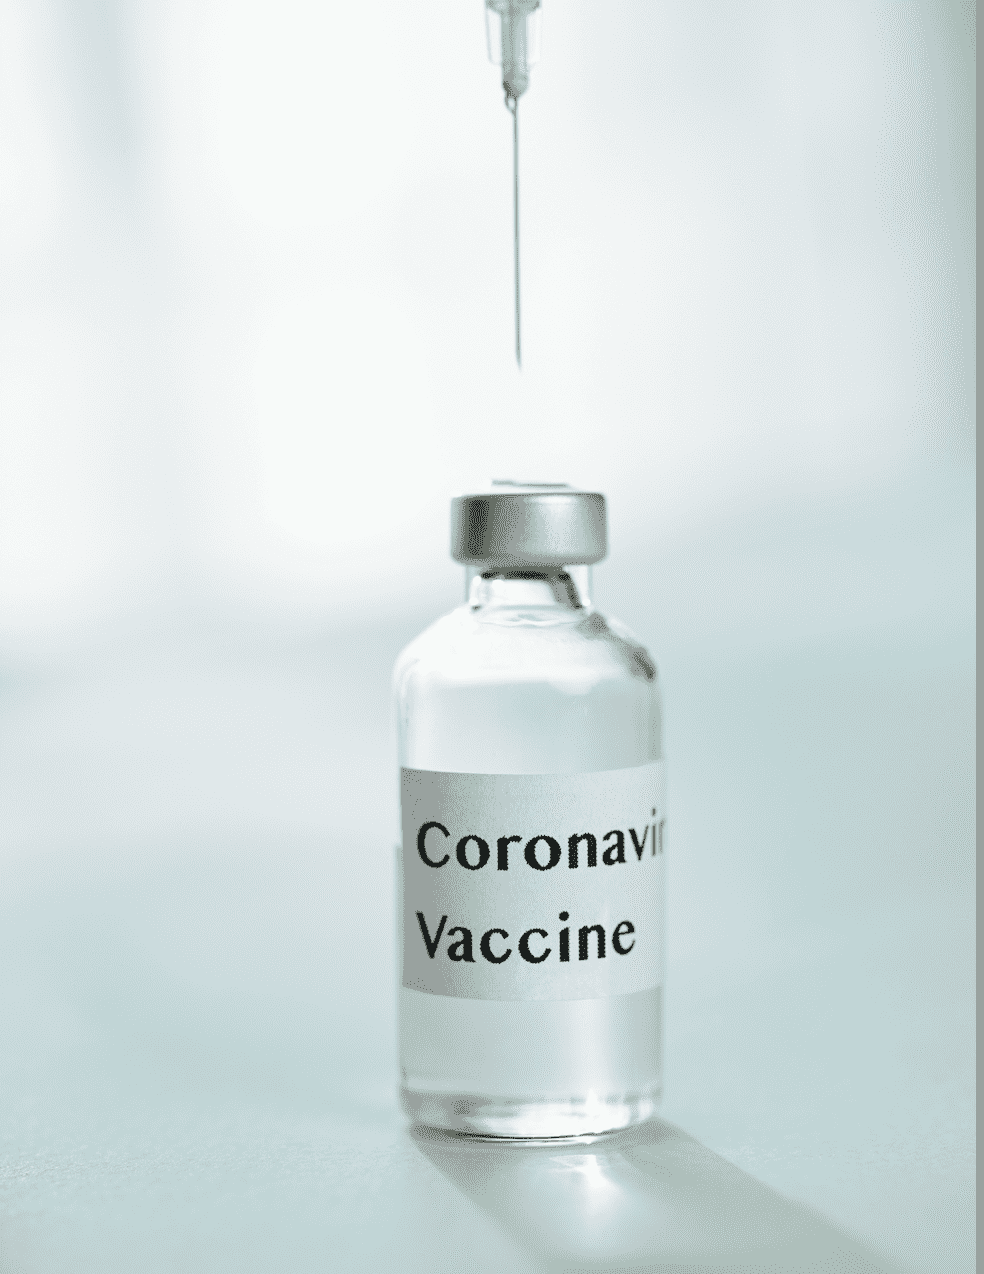 تطعيم كورونا مع مرض التصلب المتعدد - التصلب اللويحي .. هل يوصى به؟ - كوفيد-19